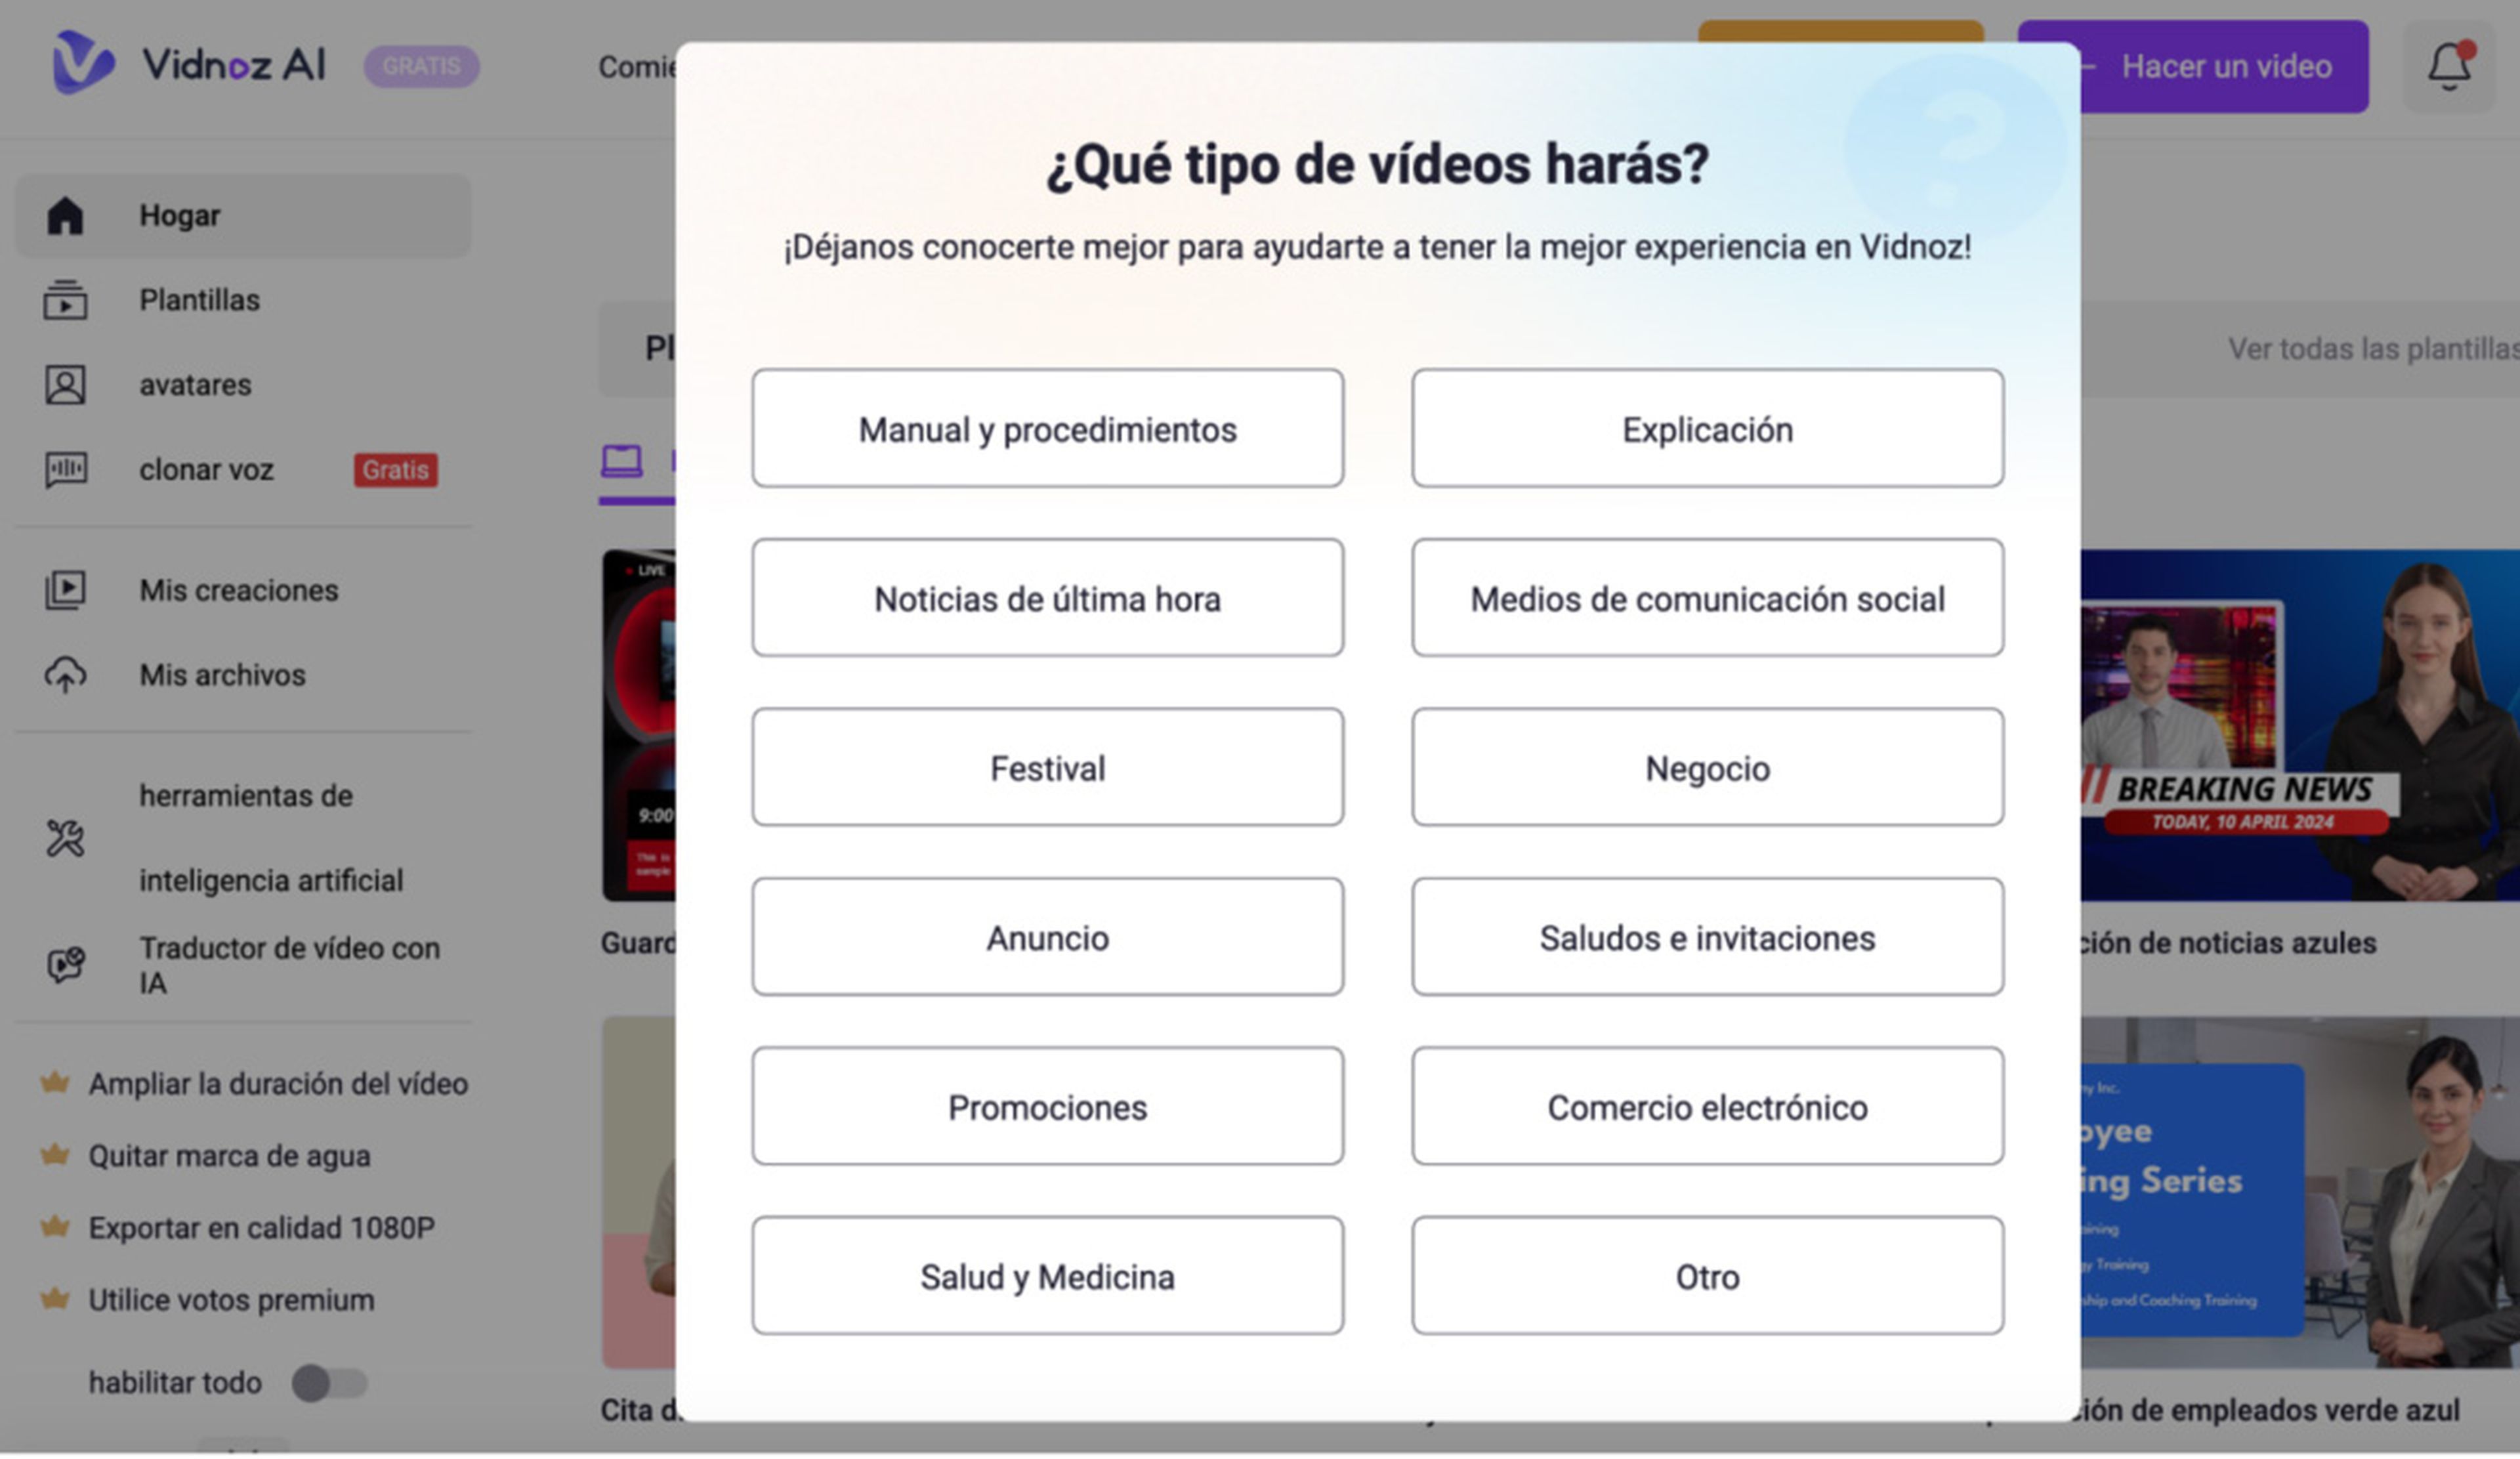 Puedes personalizar tu vídeo y escoger tus preferencias